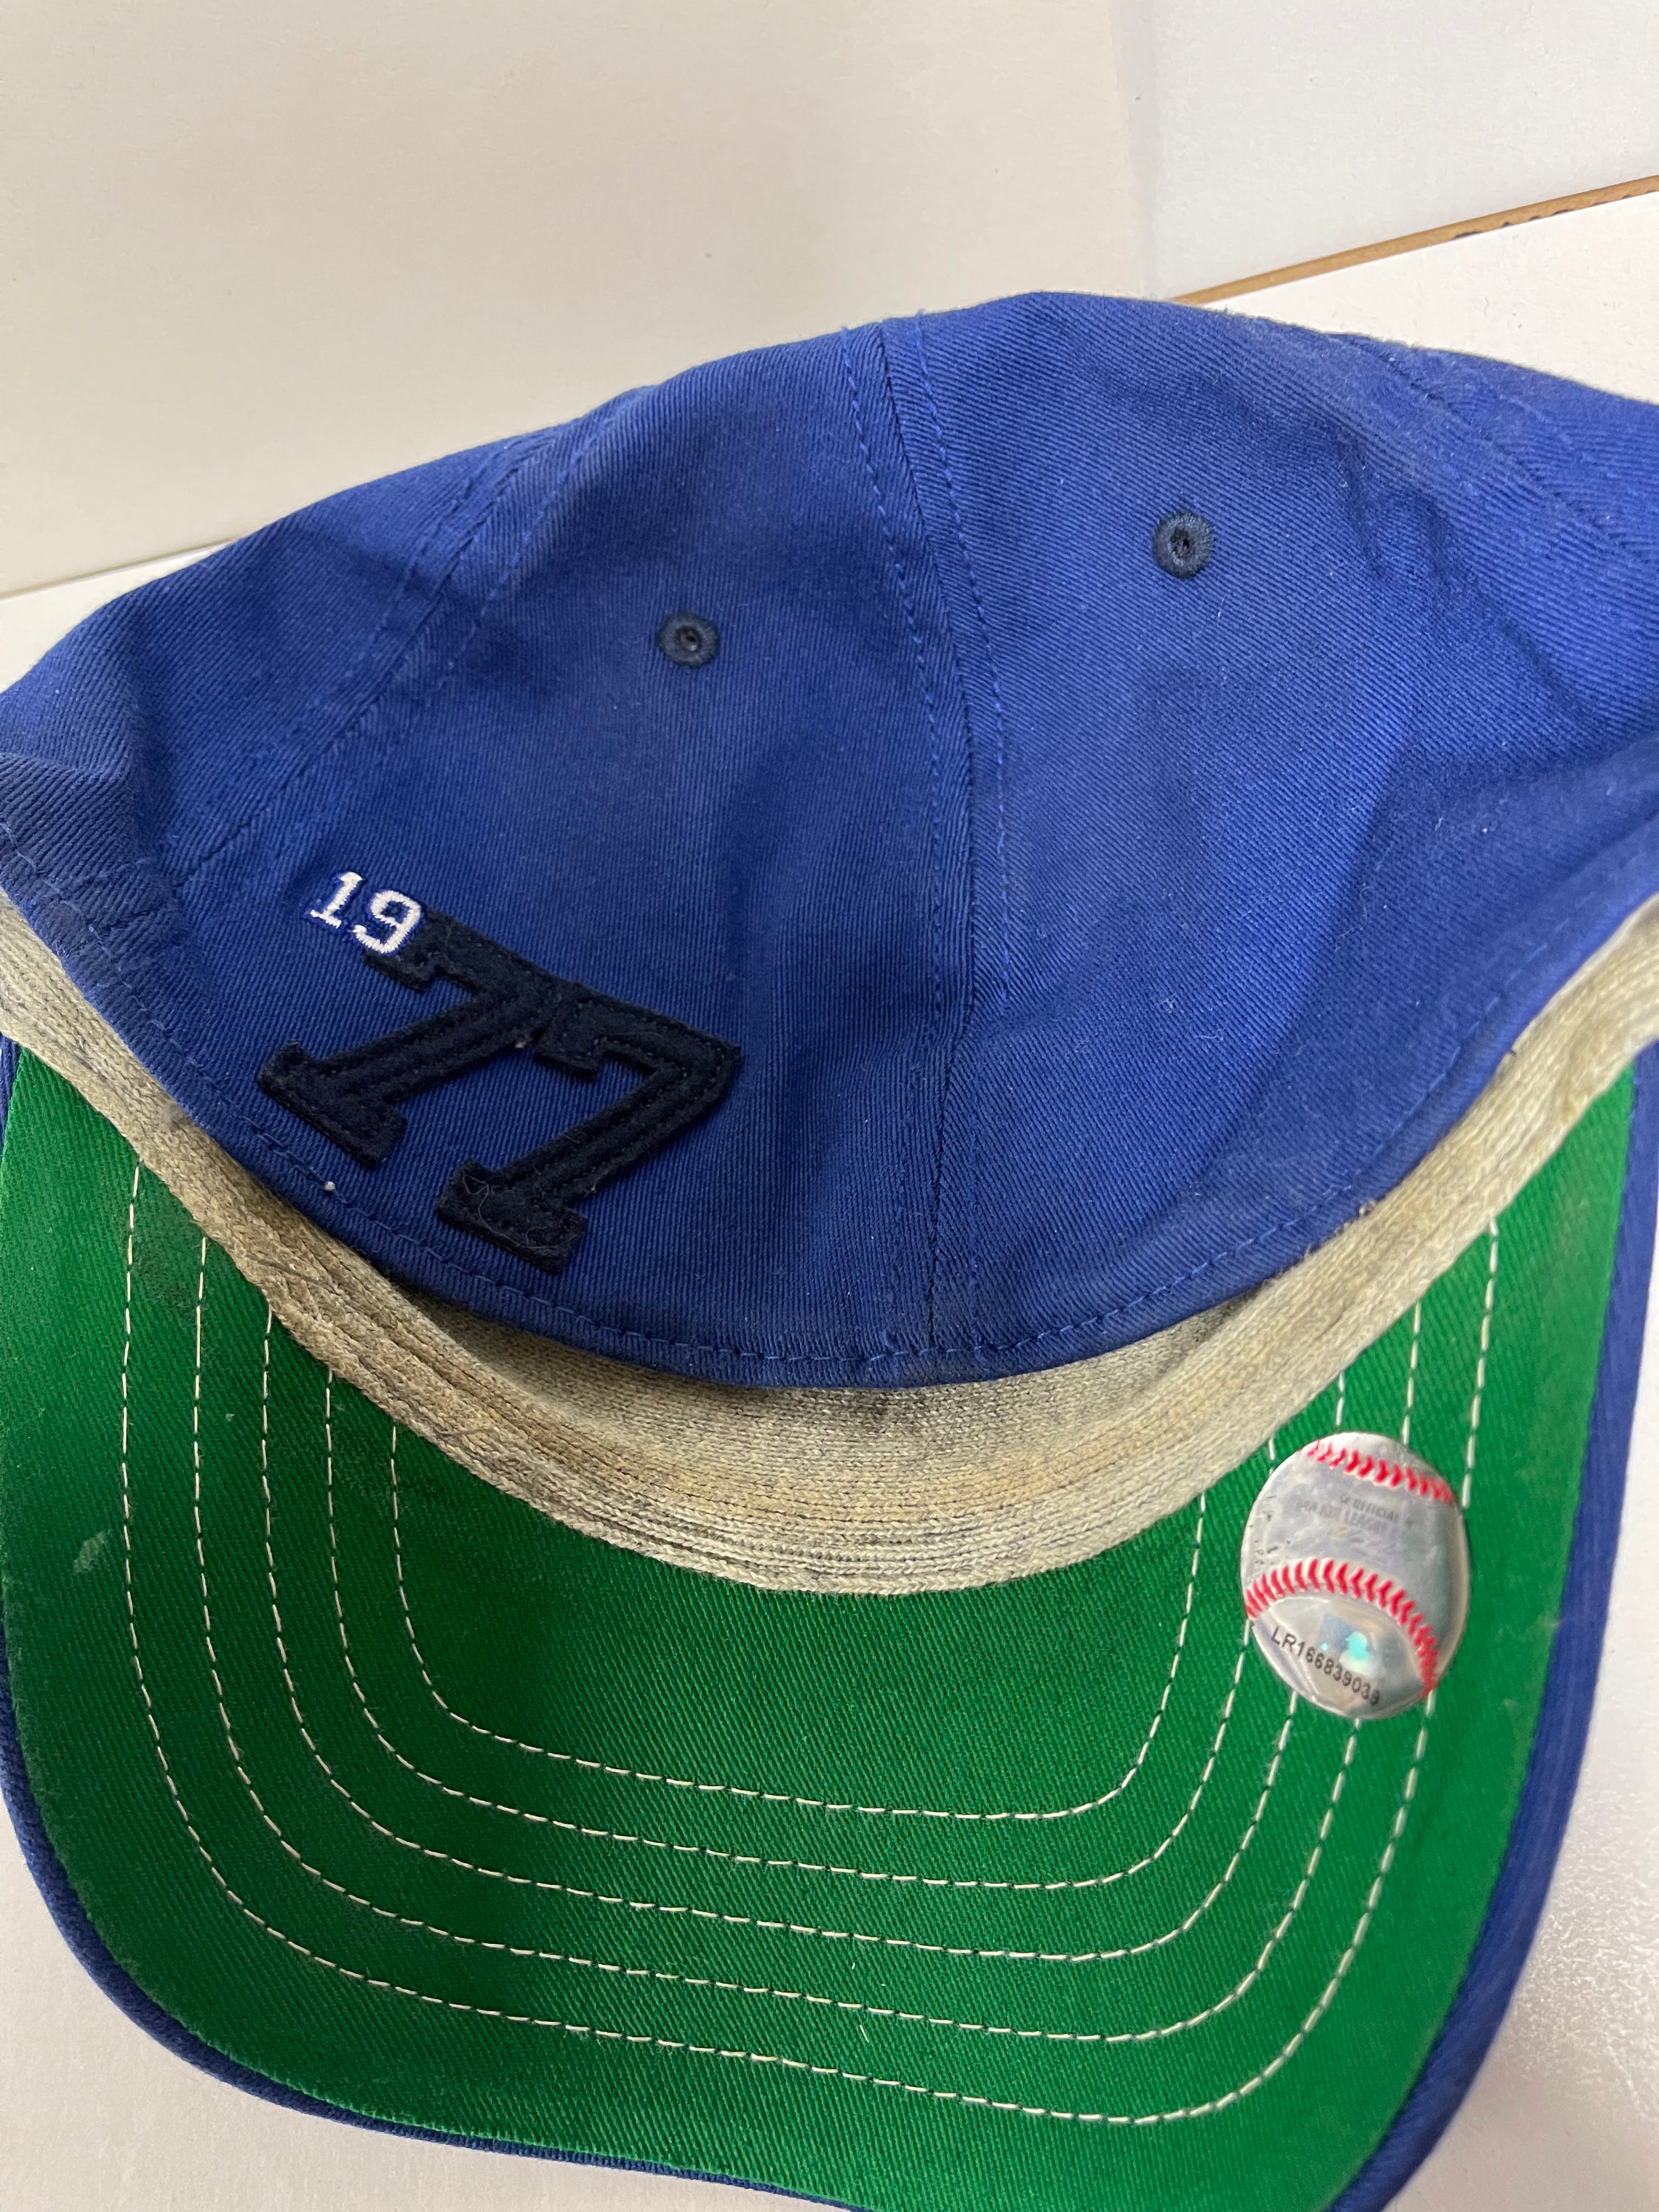 Blue Jays baseball Med.-large size vintage hat